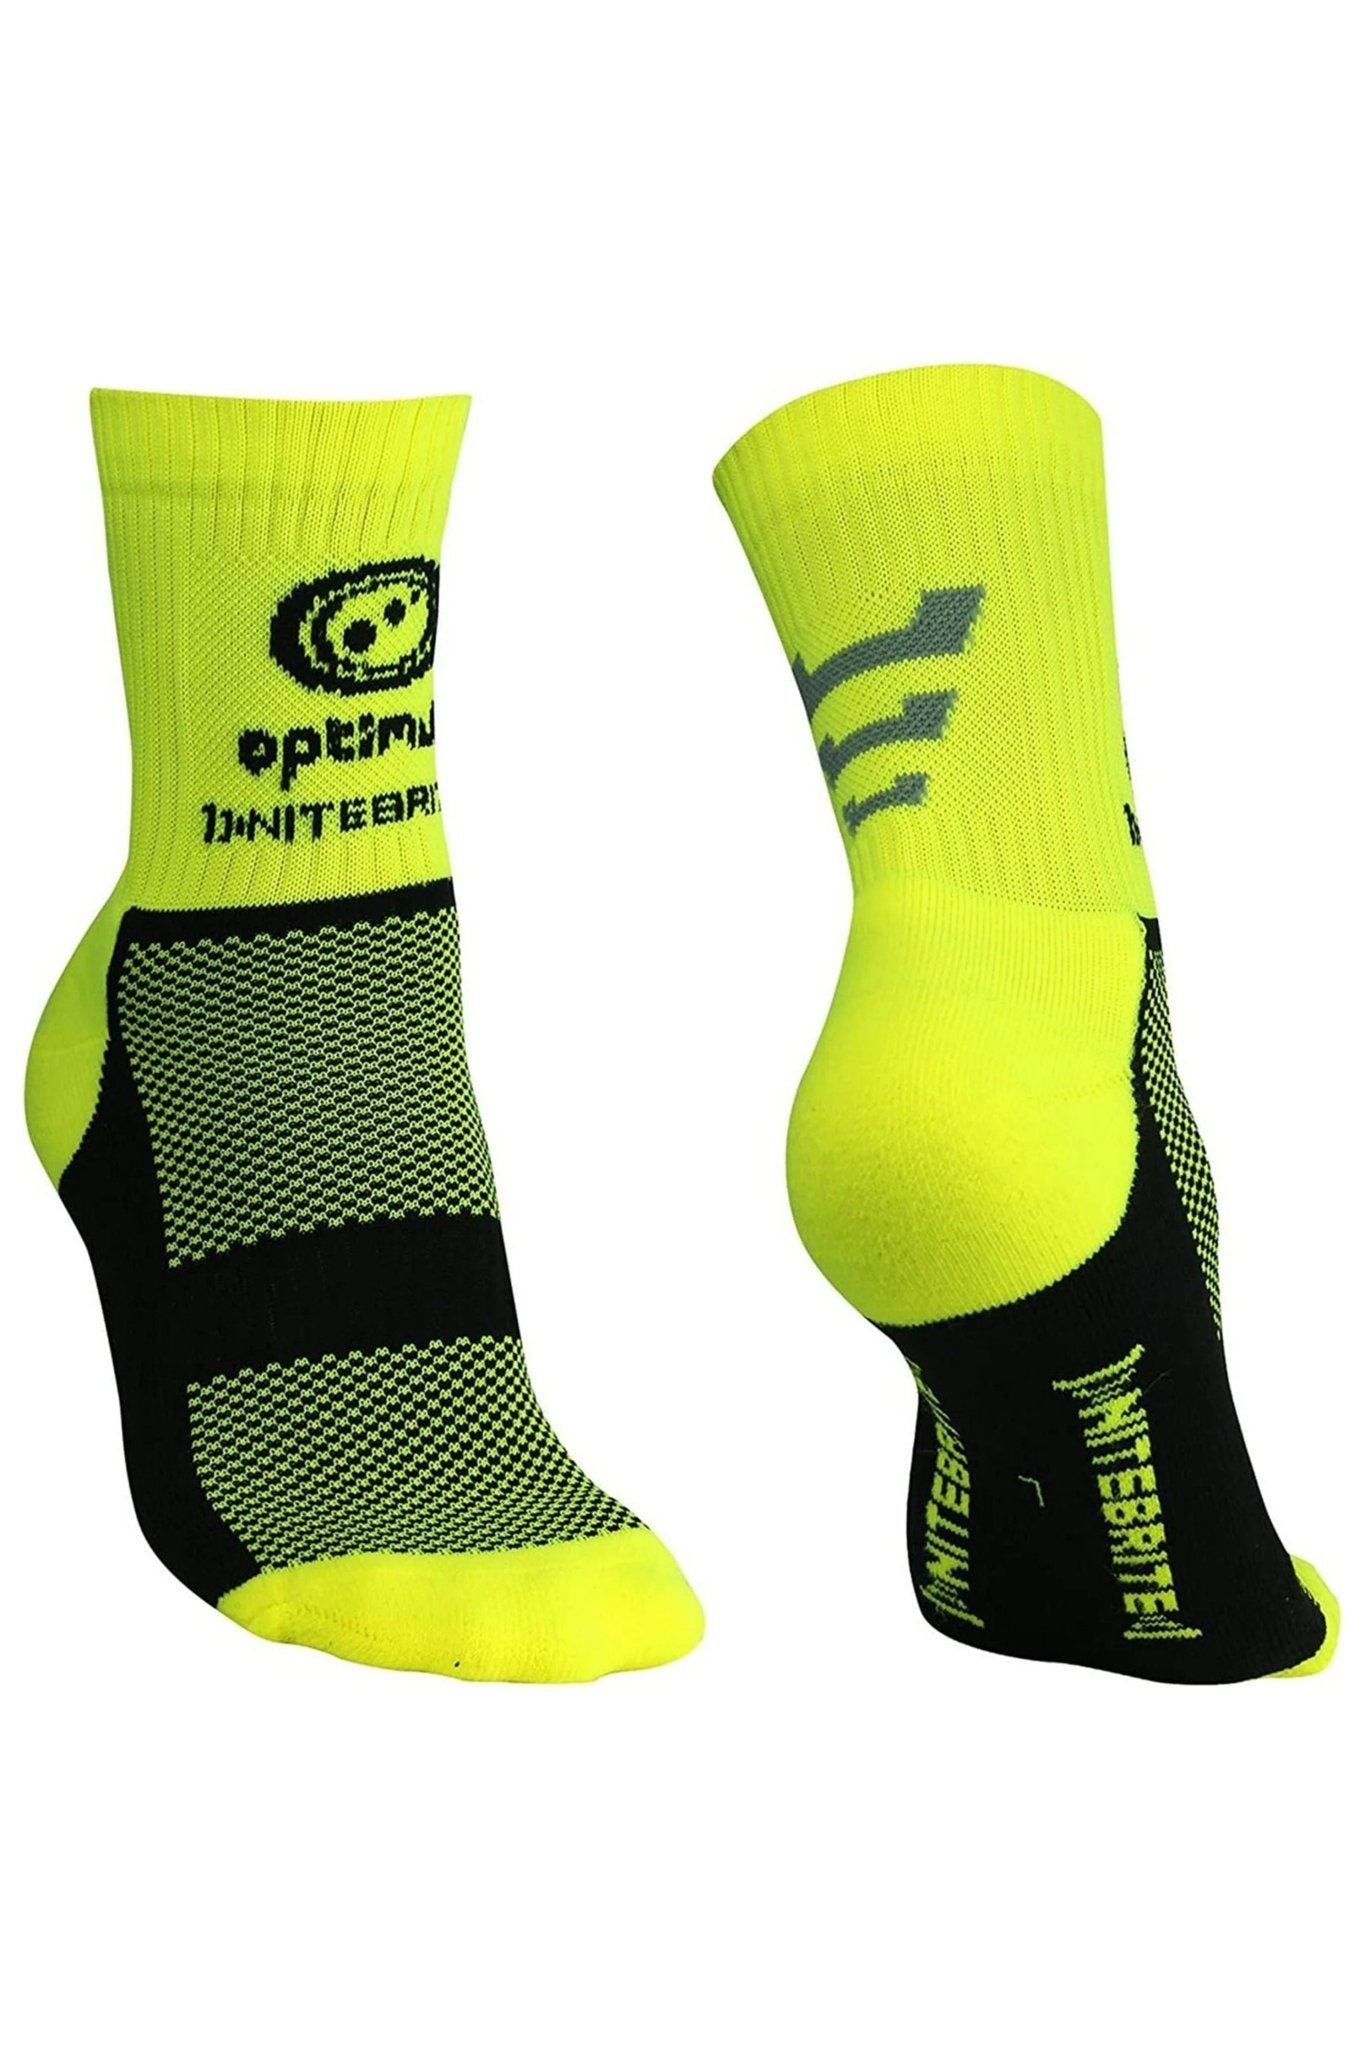 Nitebrite Socks Fluro Yellow - Optimum